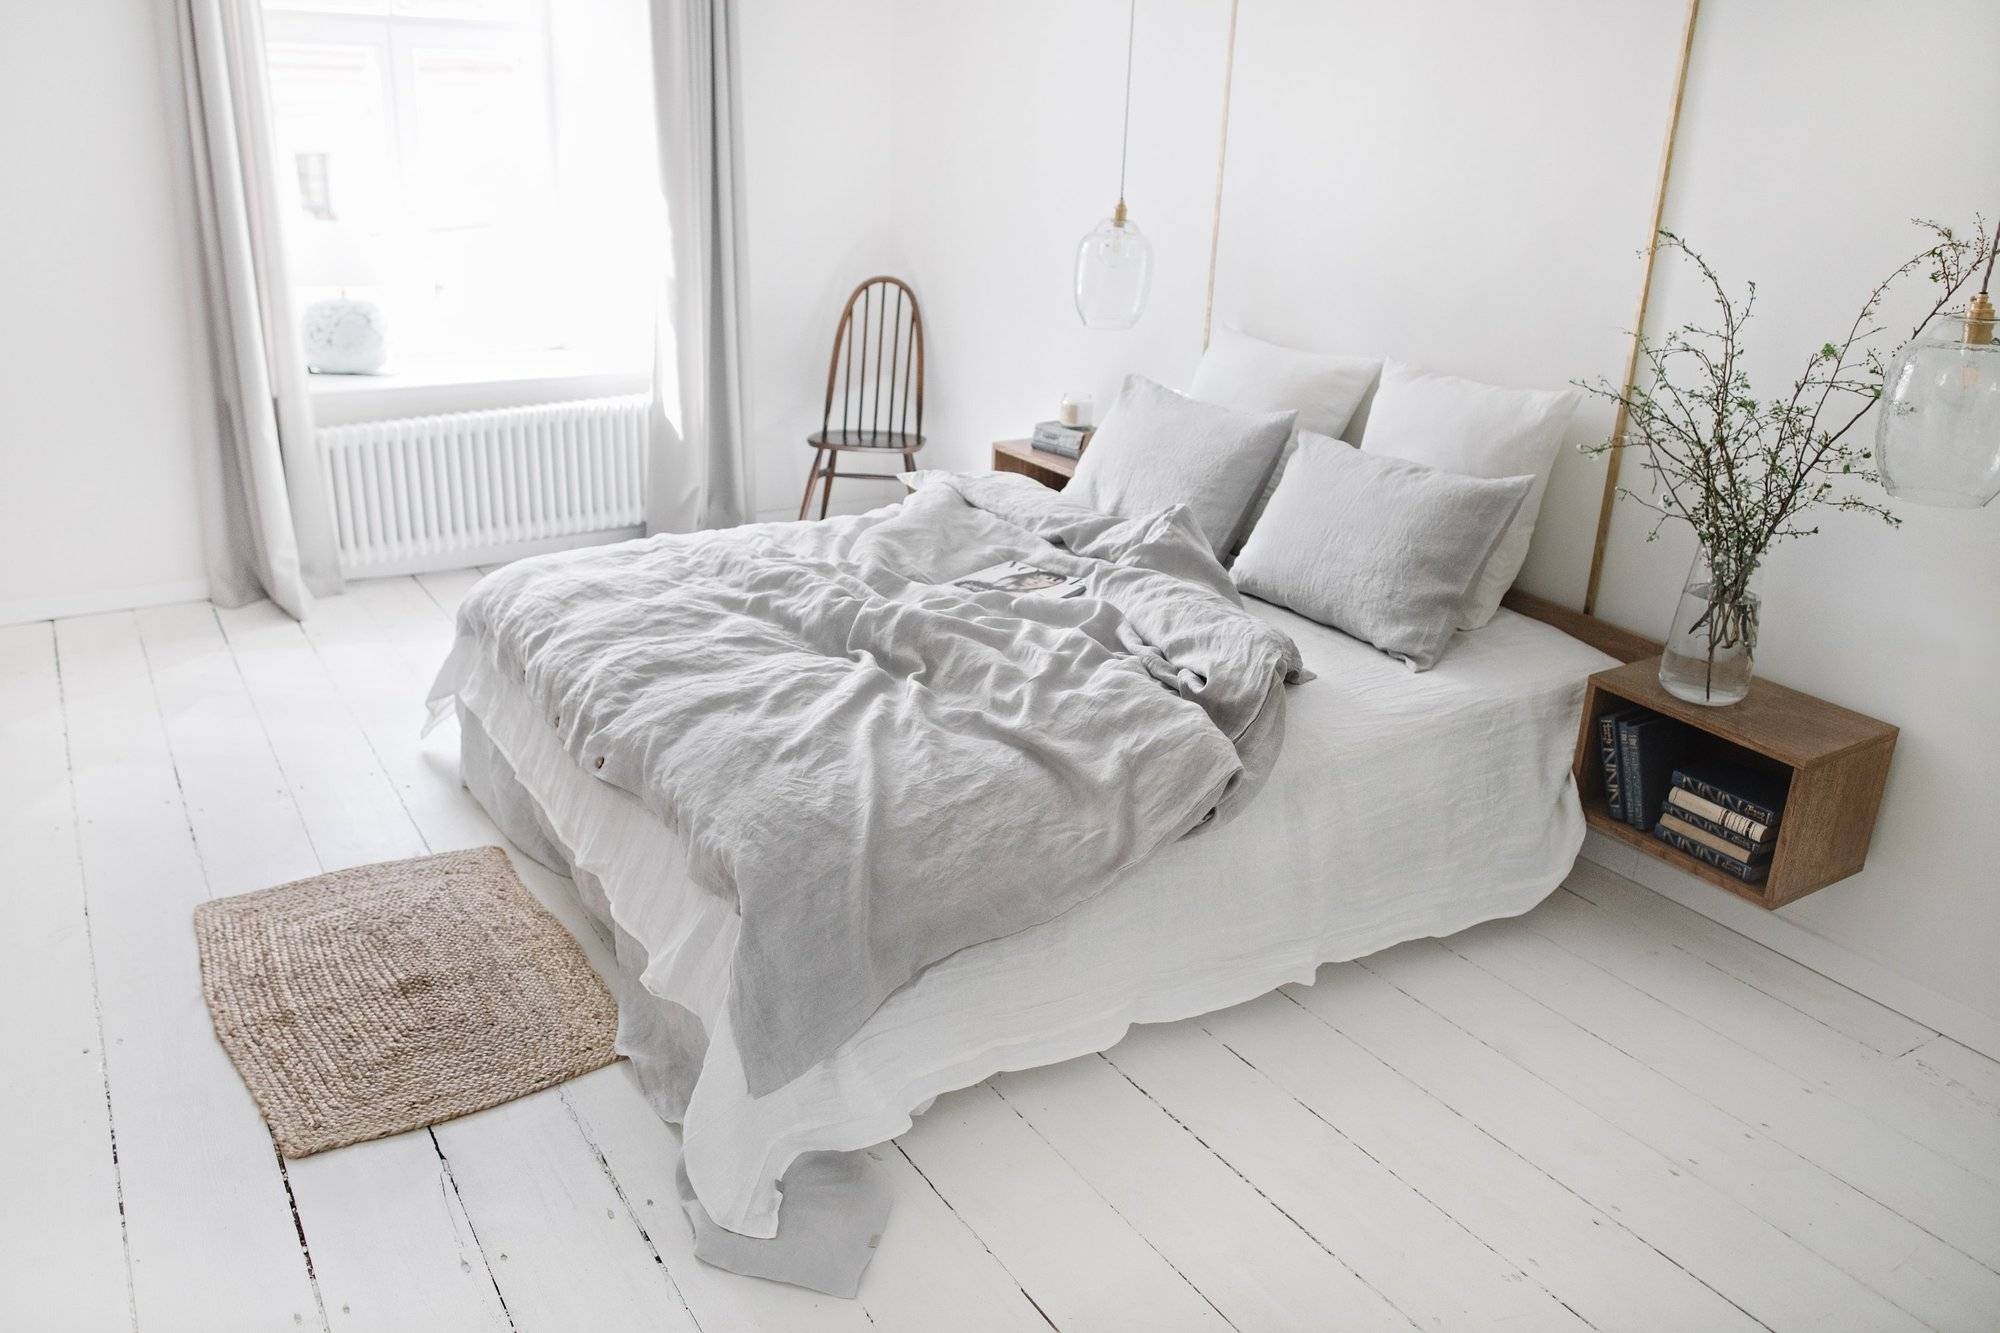 Rumpled linen bedding is a Scandinavian style staple